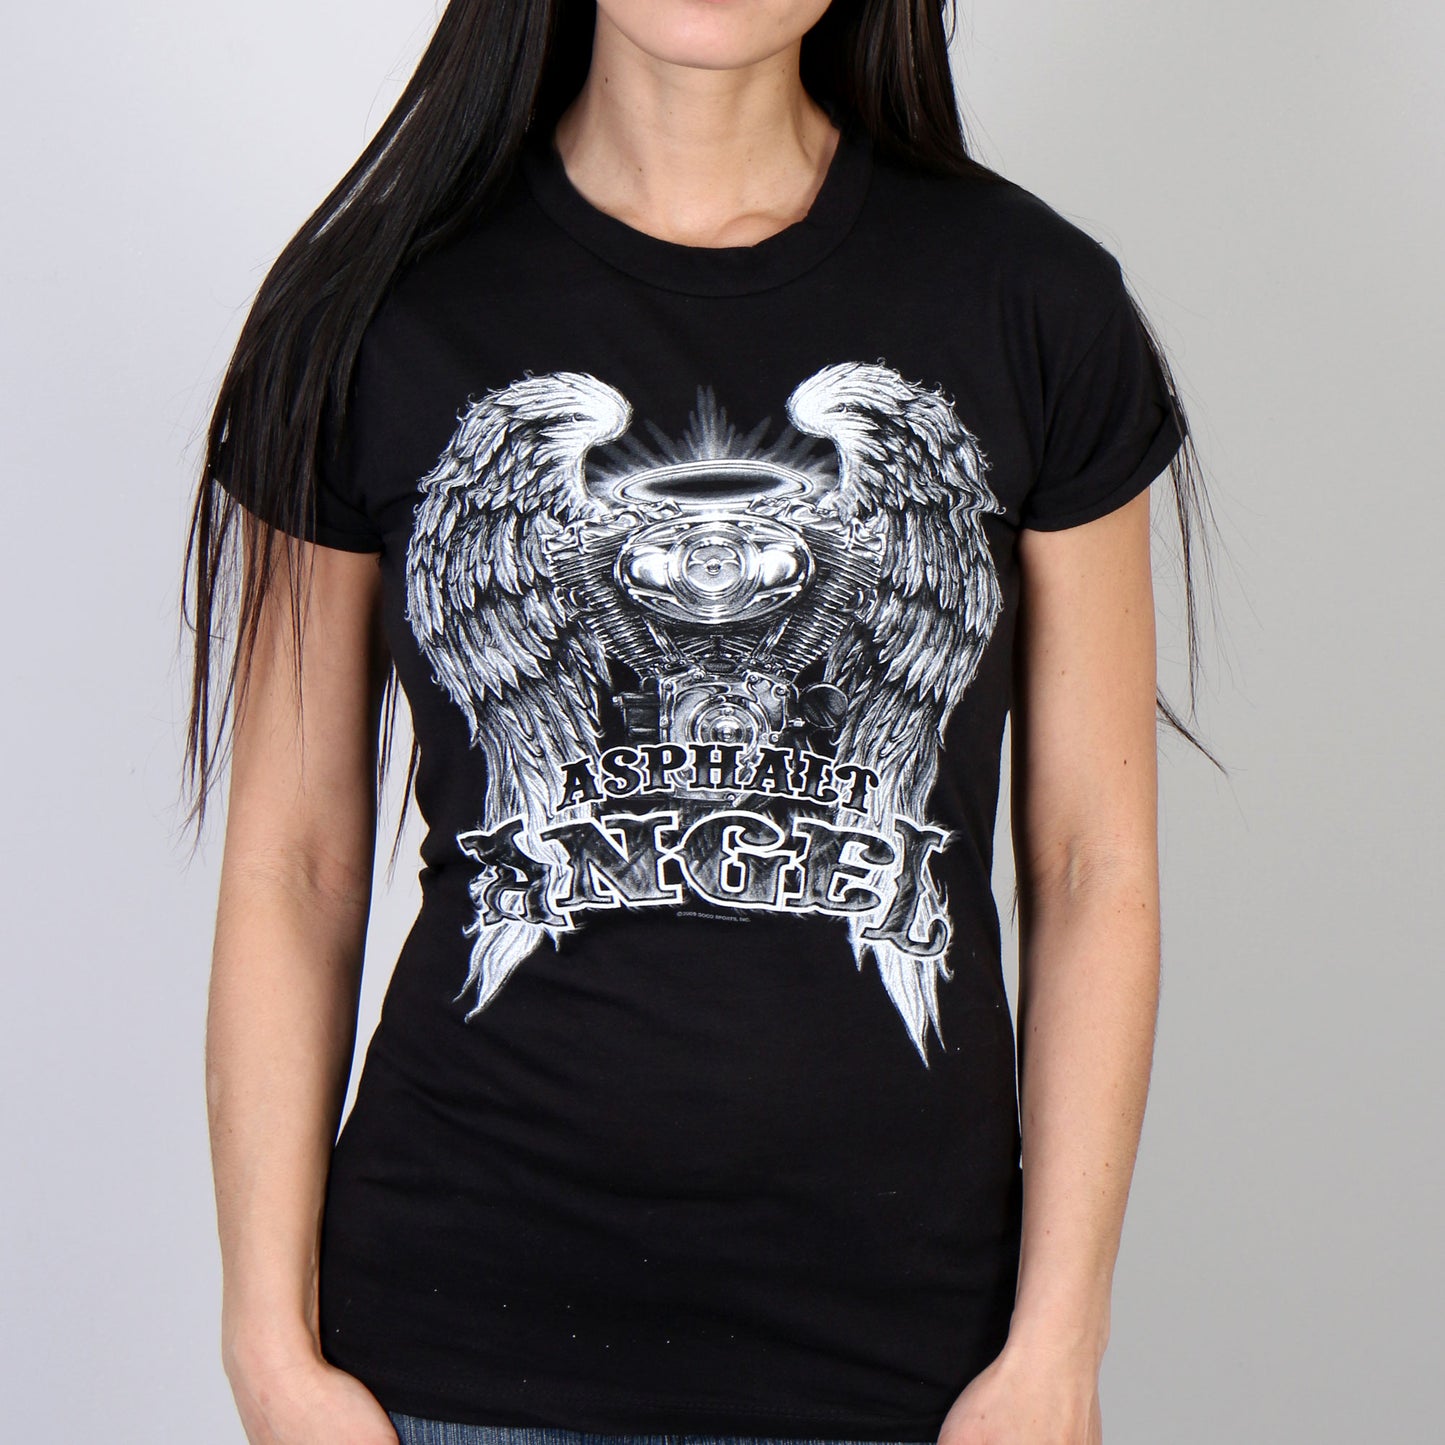 Hot Leathers GLD1366 'Slit Back Asphalt Angel' Ladies Black T-Shirt